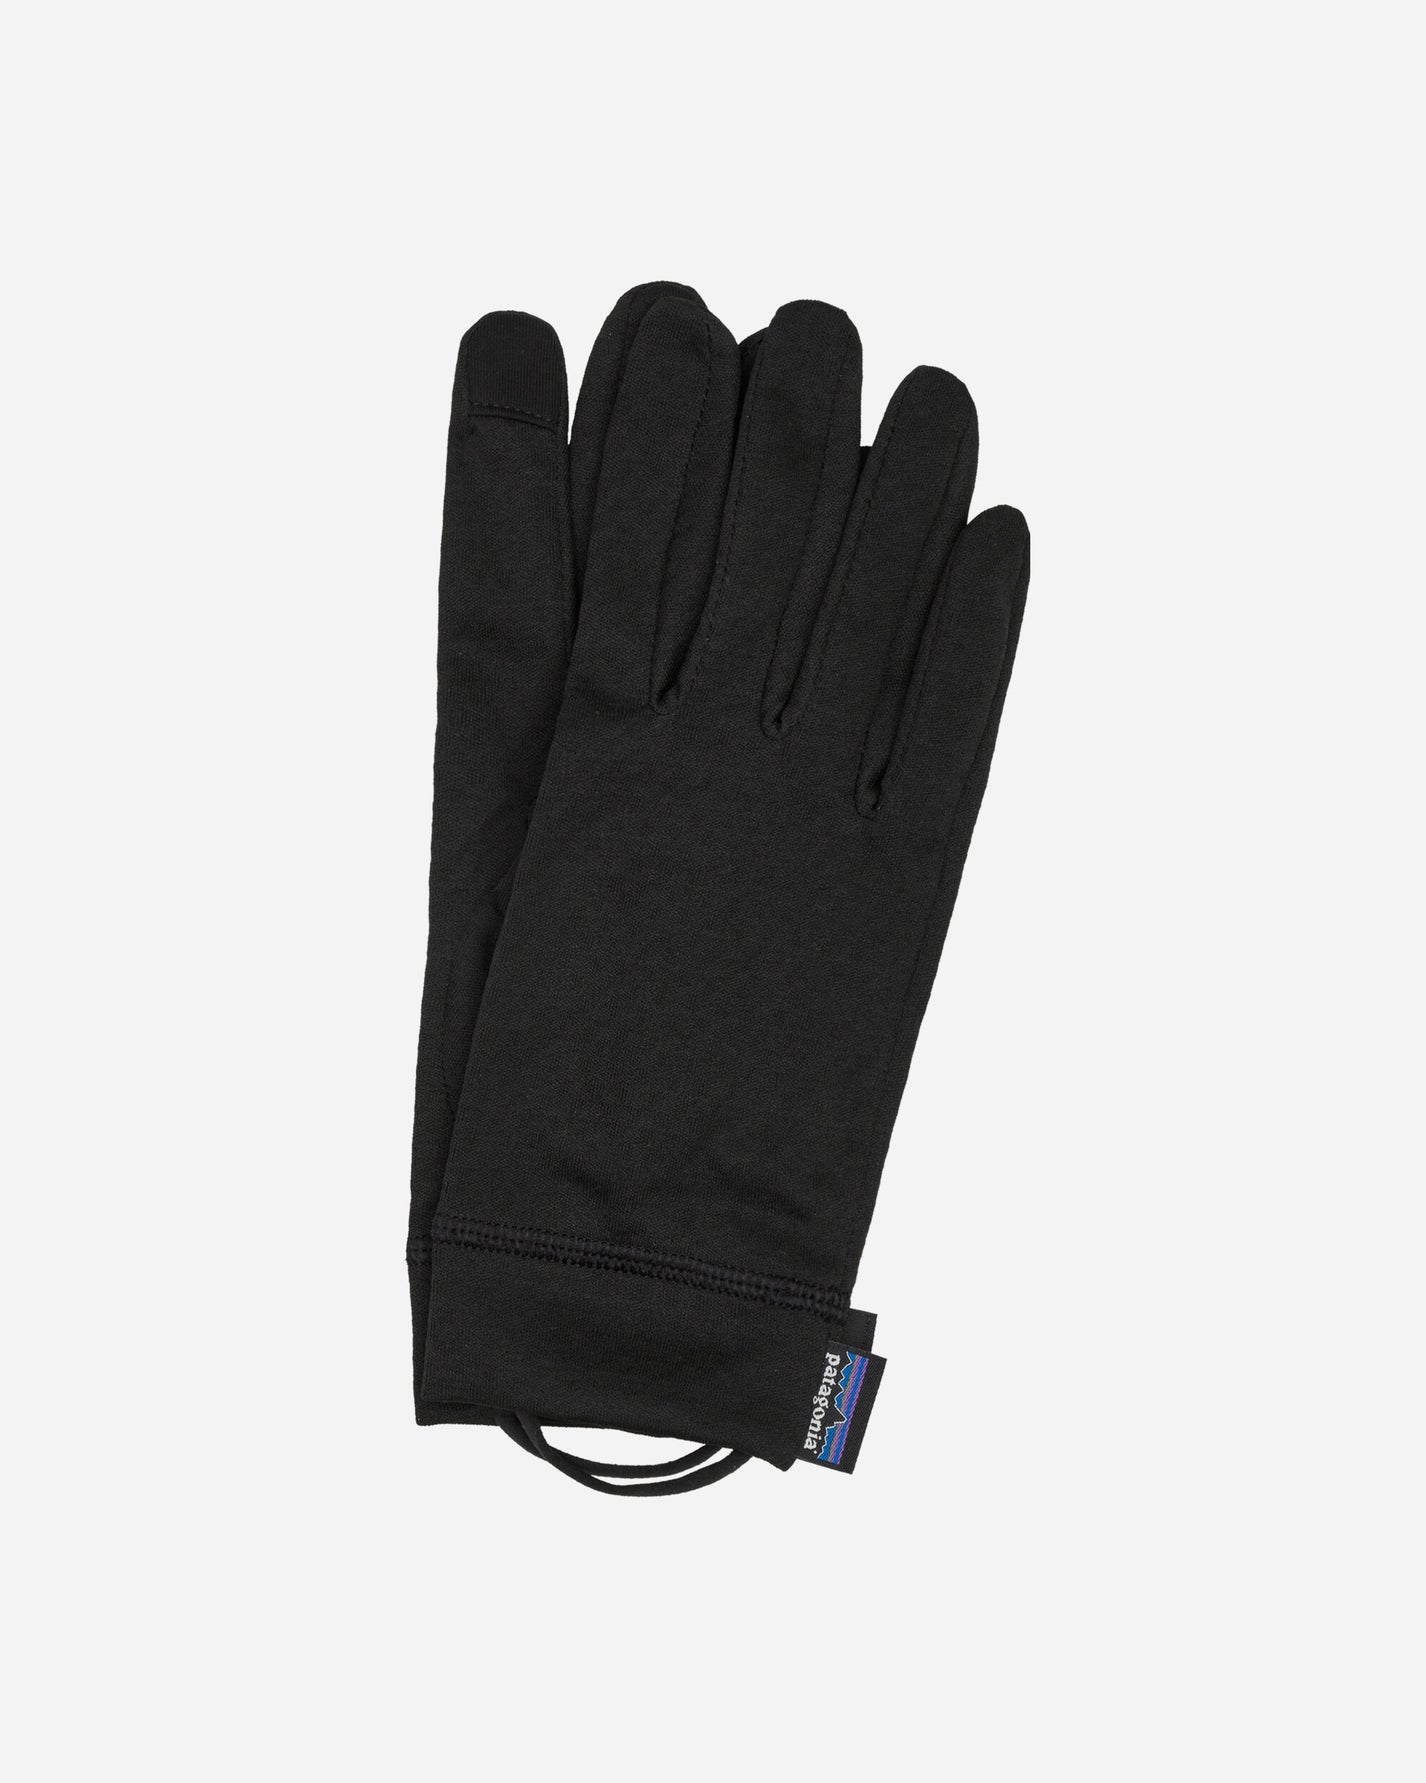 Patagonia Cap Mw Liner Gloves Black Gloves and Scarves Gloves 34540 BLK